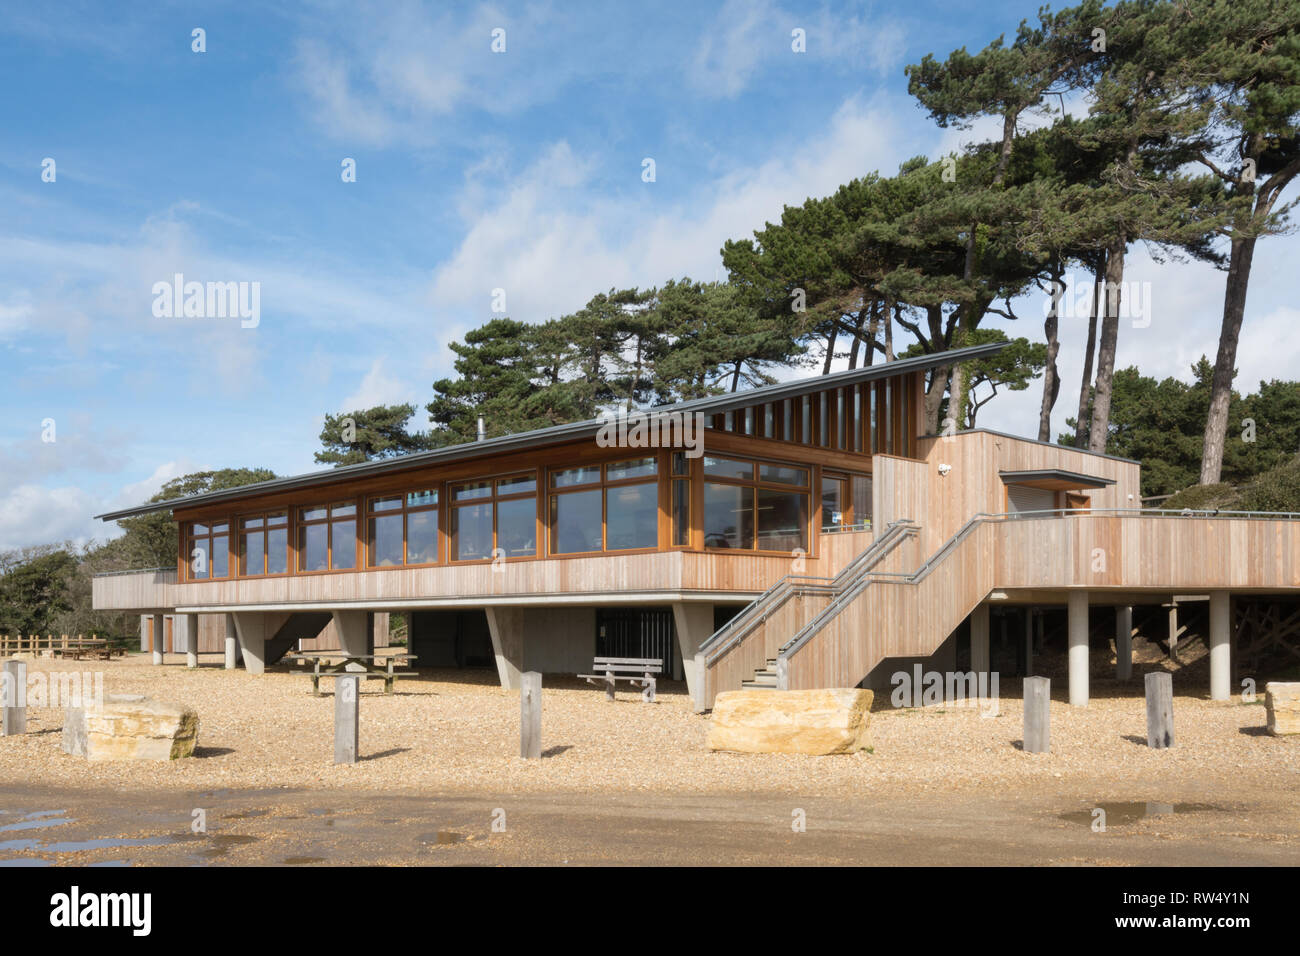 La vedetta, un nuovo ristorante e negozio sulla spiaggia a Lepe Country Park in Hampshire, Regno Unito Foto Stock